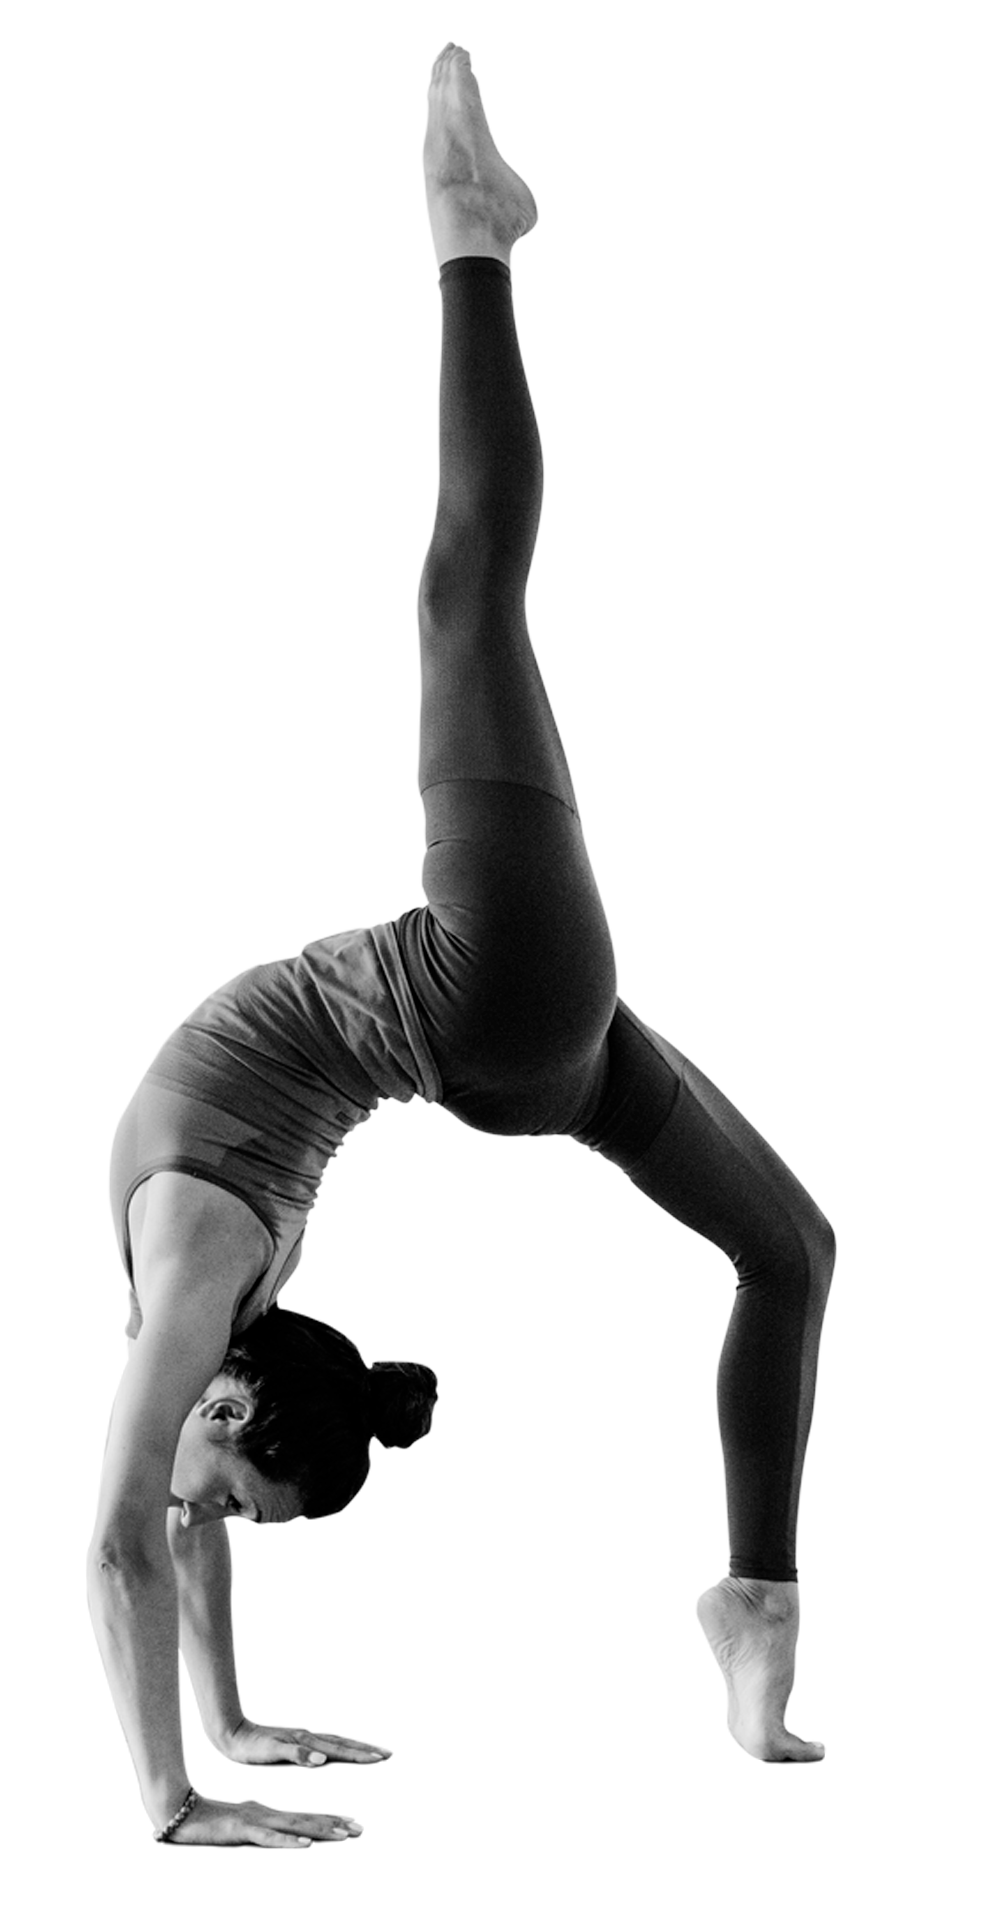 Cirque De Silk Yoga teacher in pose